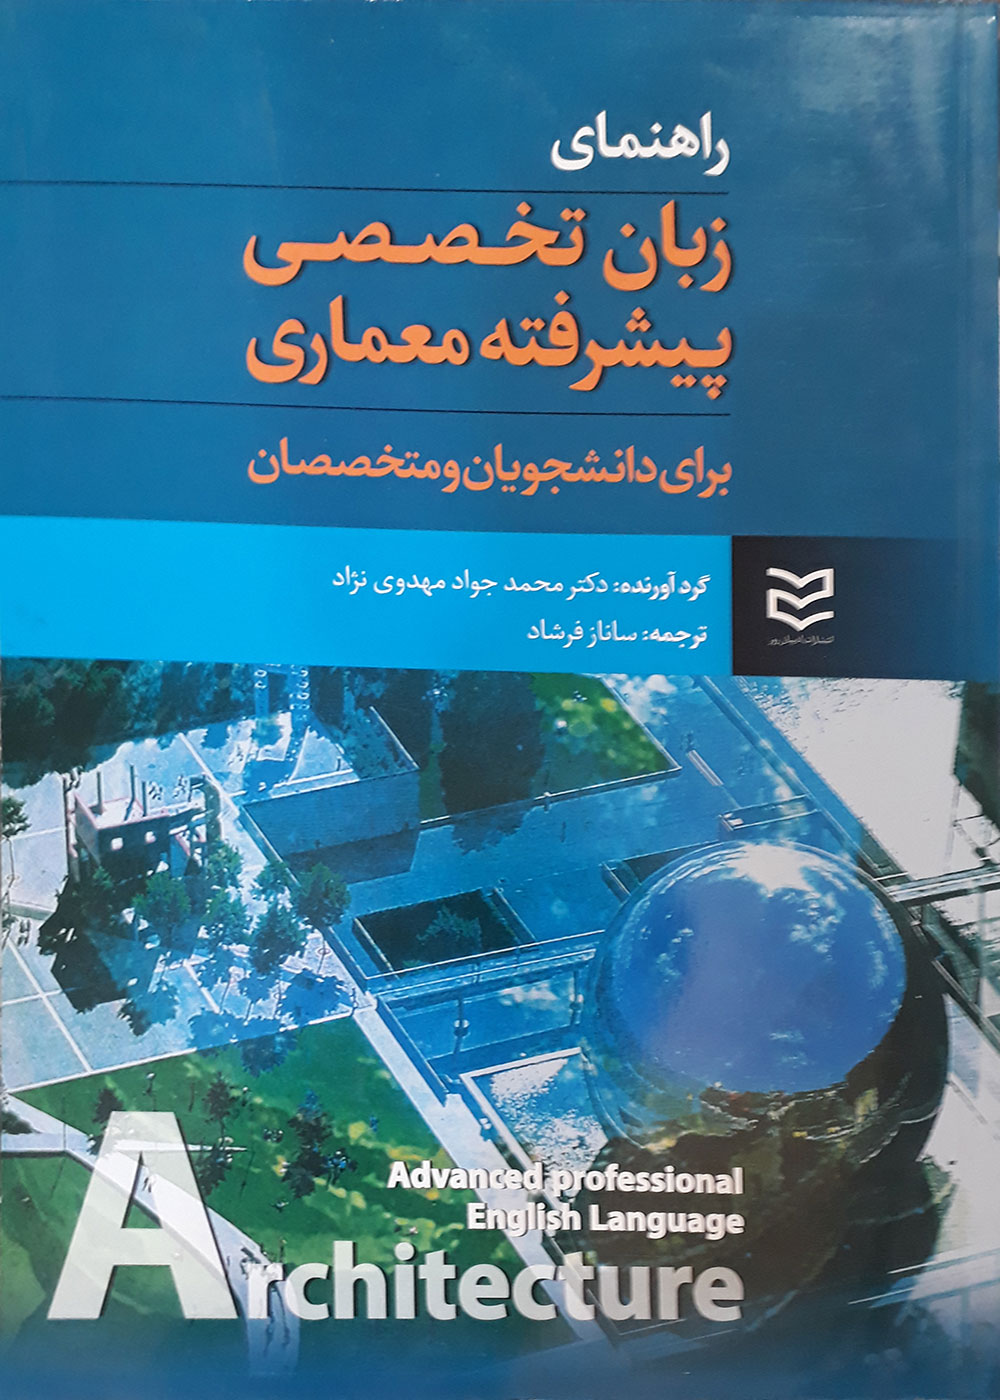 کتاب راهنمای زبان تخصصی پیشرفته معماری برای دانشجویان و متخصصان ساناز فرشاد